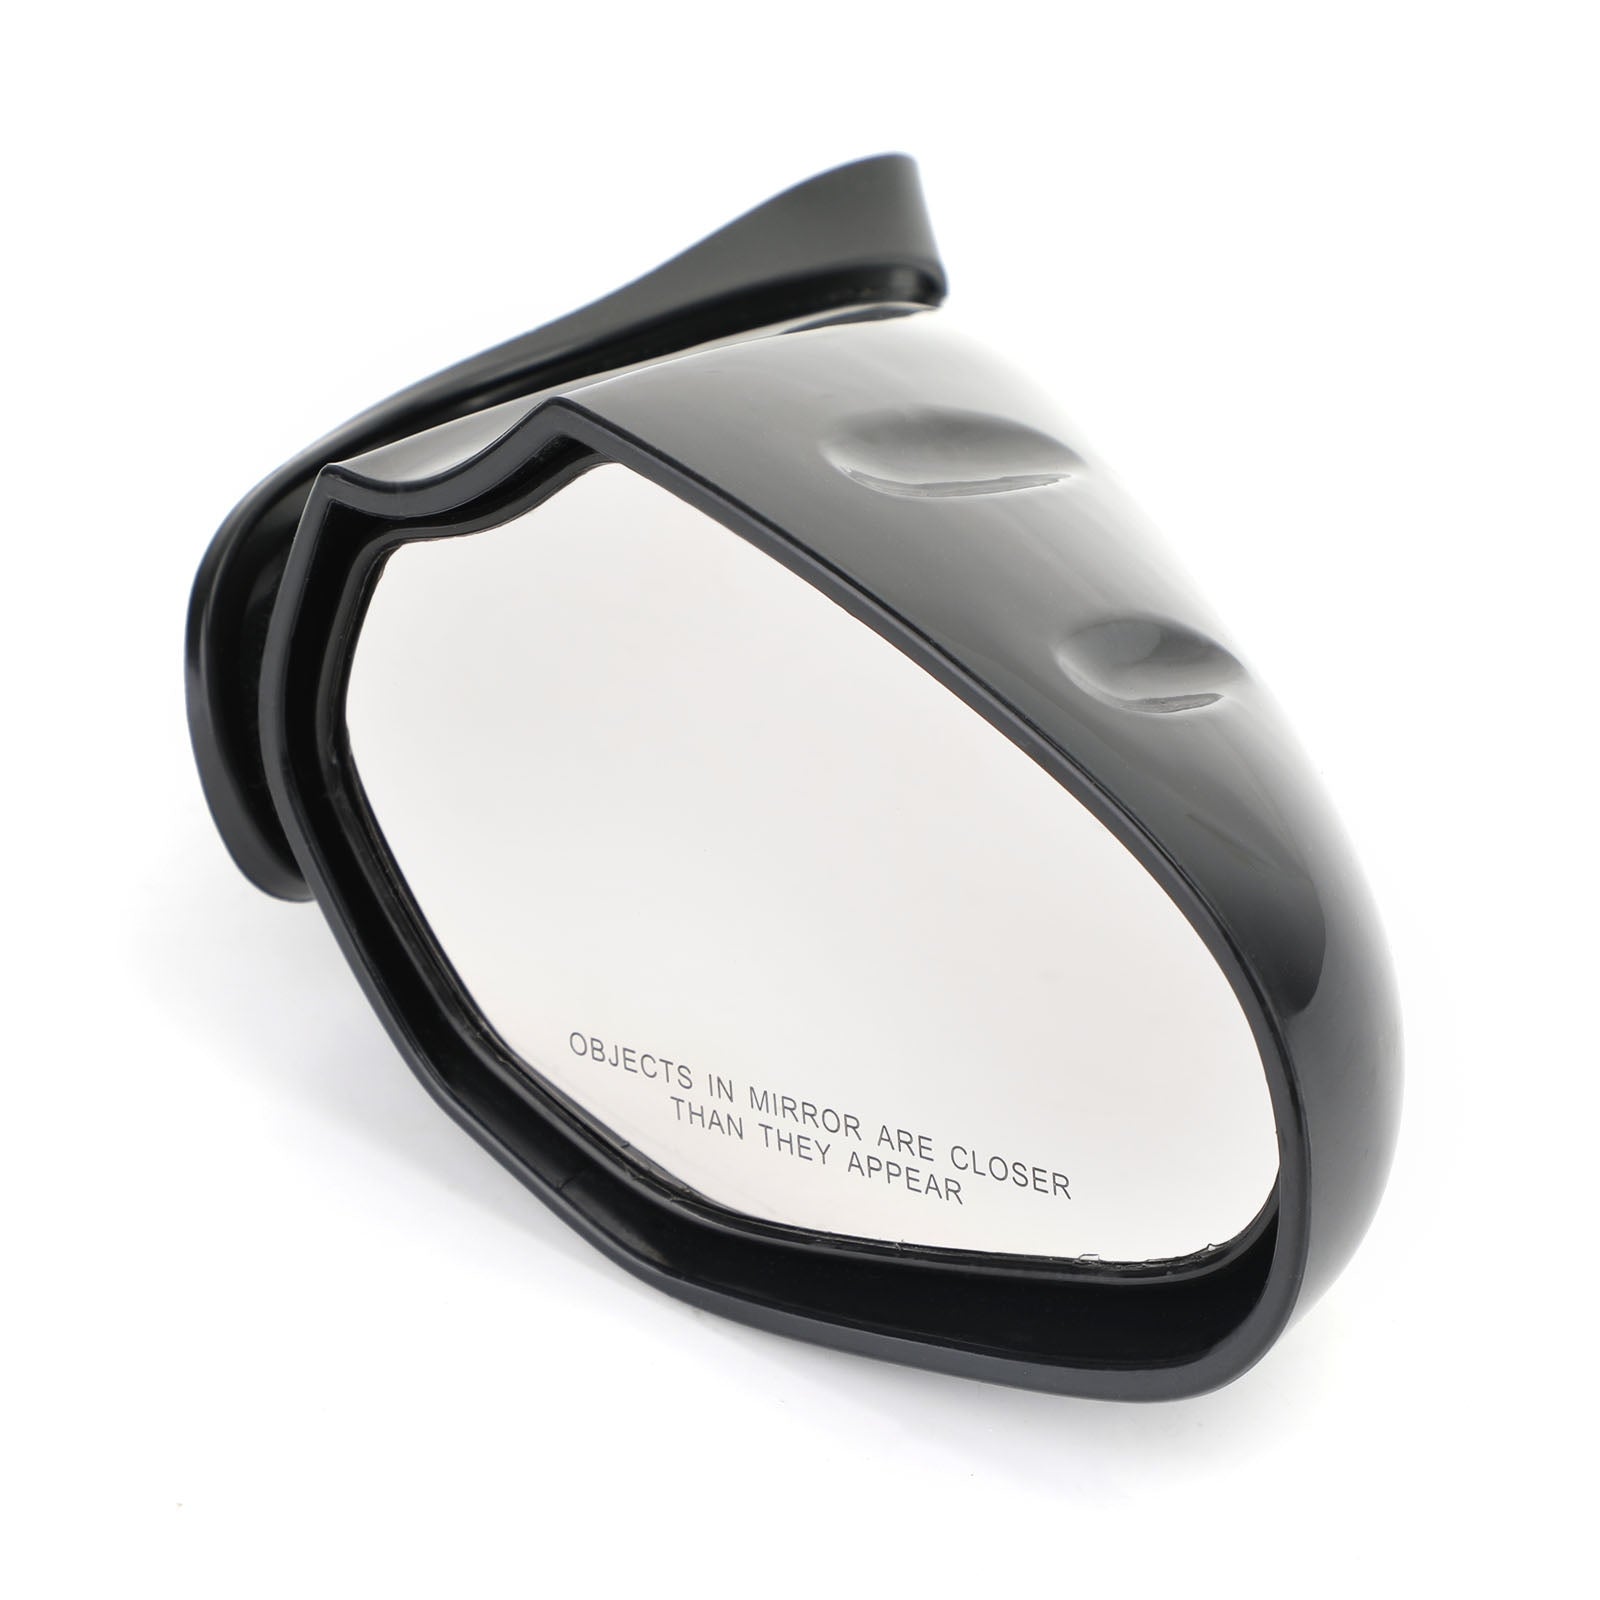 Specchietto retrovisore destro per Yamaha WaveRunner 10-15 VX VXR VXS V1 Cruiser Deluxe Sport